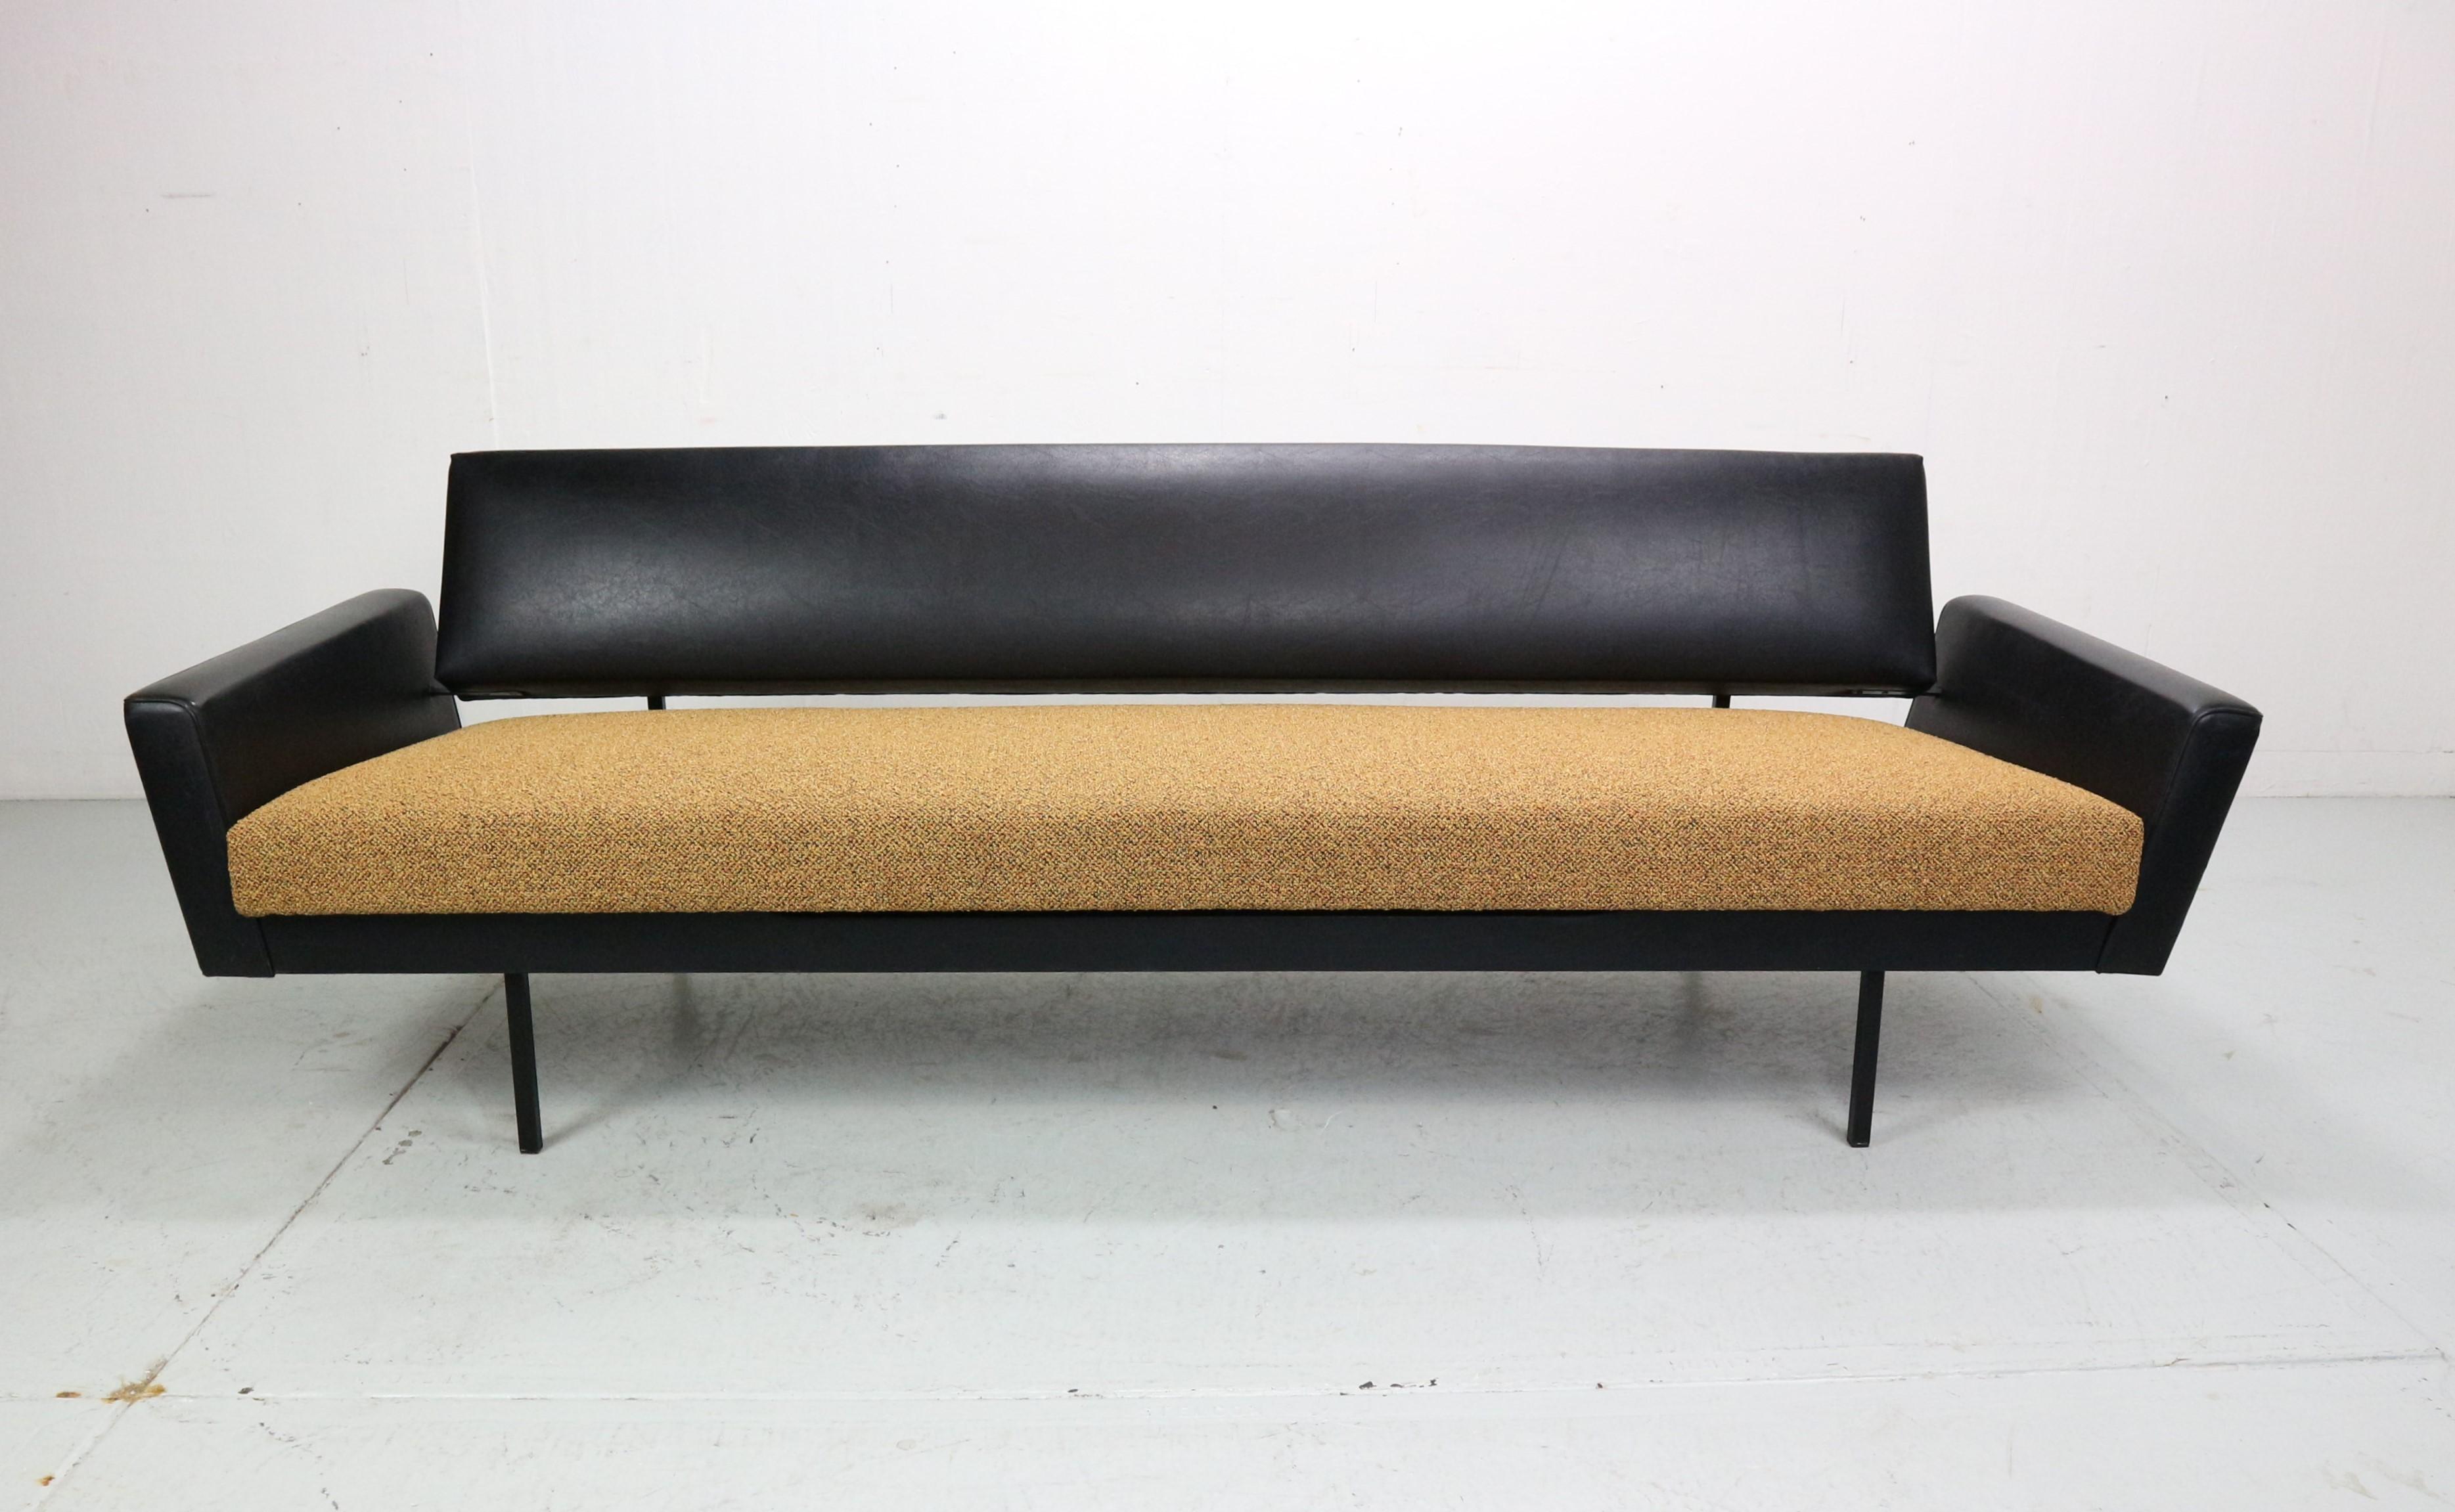 Dieses Sofa wurde von Rob Parry entworfen und von Gelderland hergestellt. Diese spezielle Ausführung mit gepolsterten Armlehnen ist recht selten. Der Sitzteil des Sofas kann leicht in eine flache Position gebracht werden, so dass man sich bequem